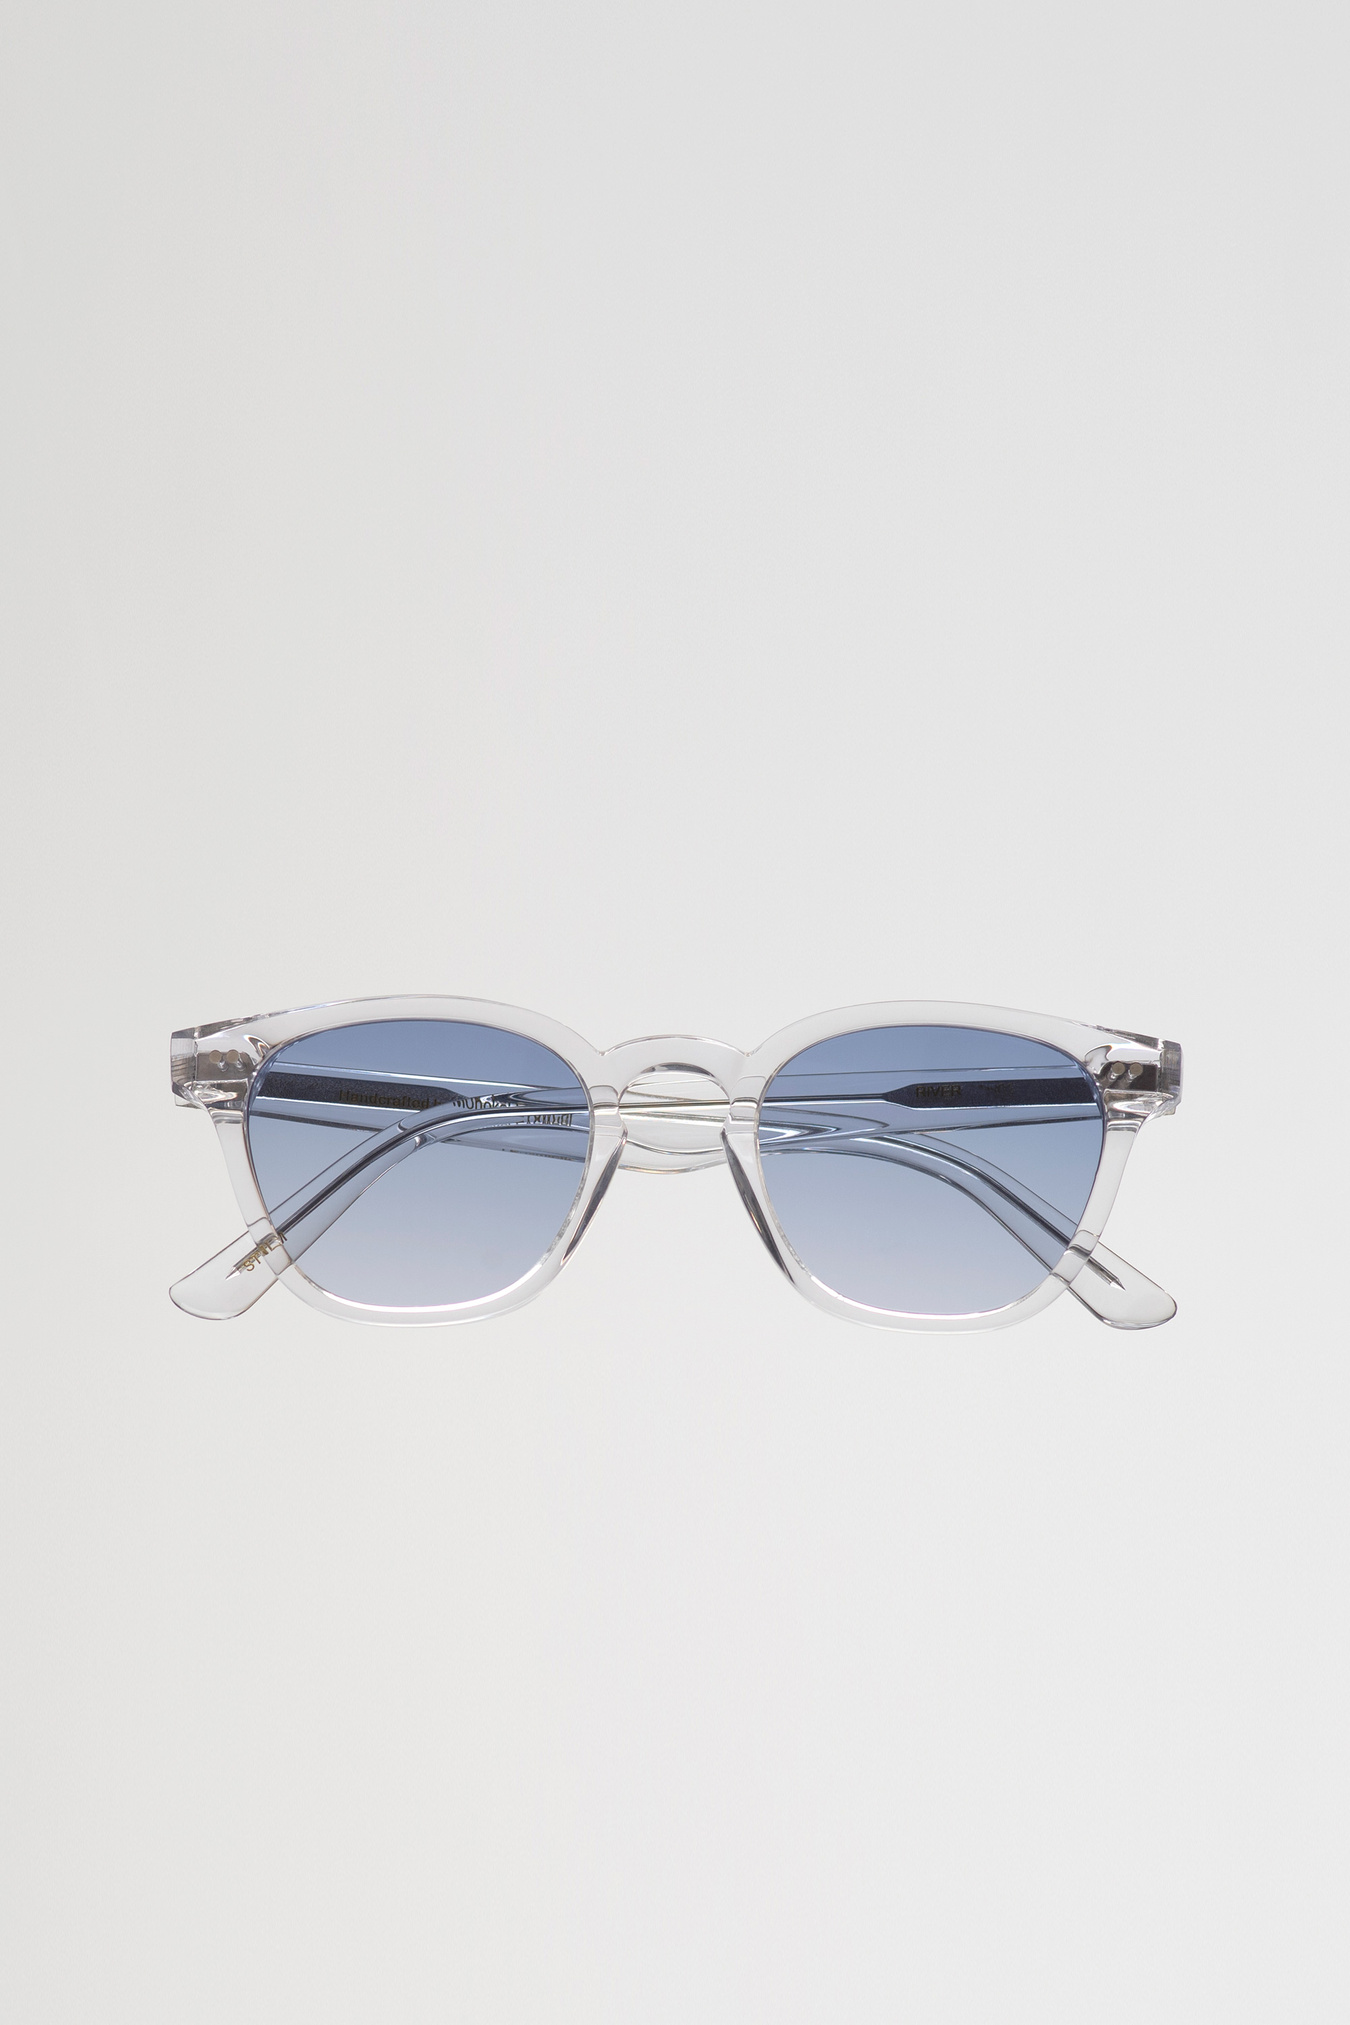 Monokel Eyewear River Crystal - Blue Gradient lens Sunglasses